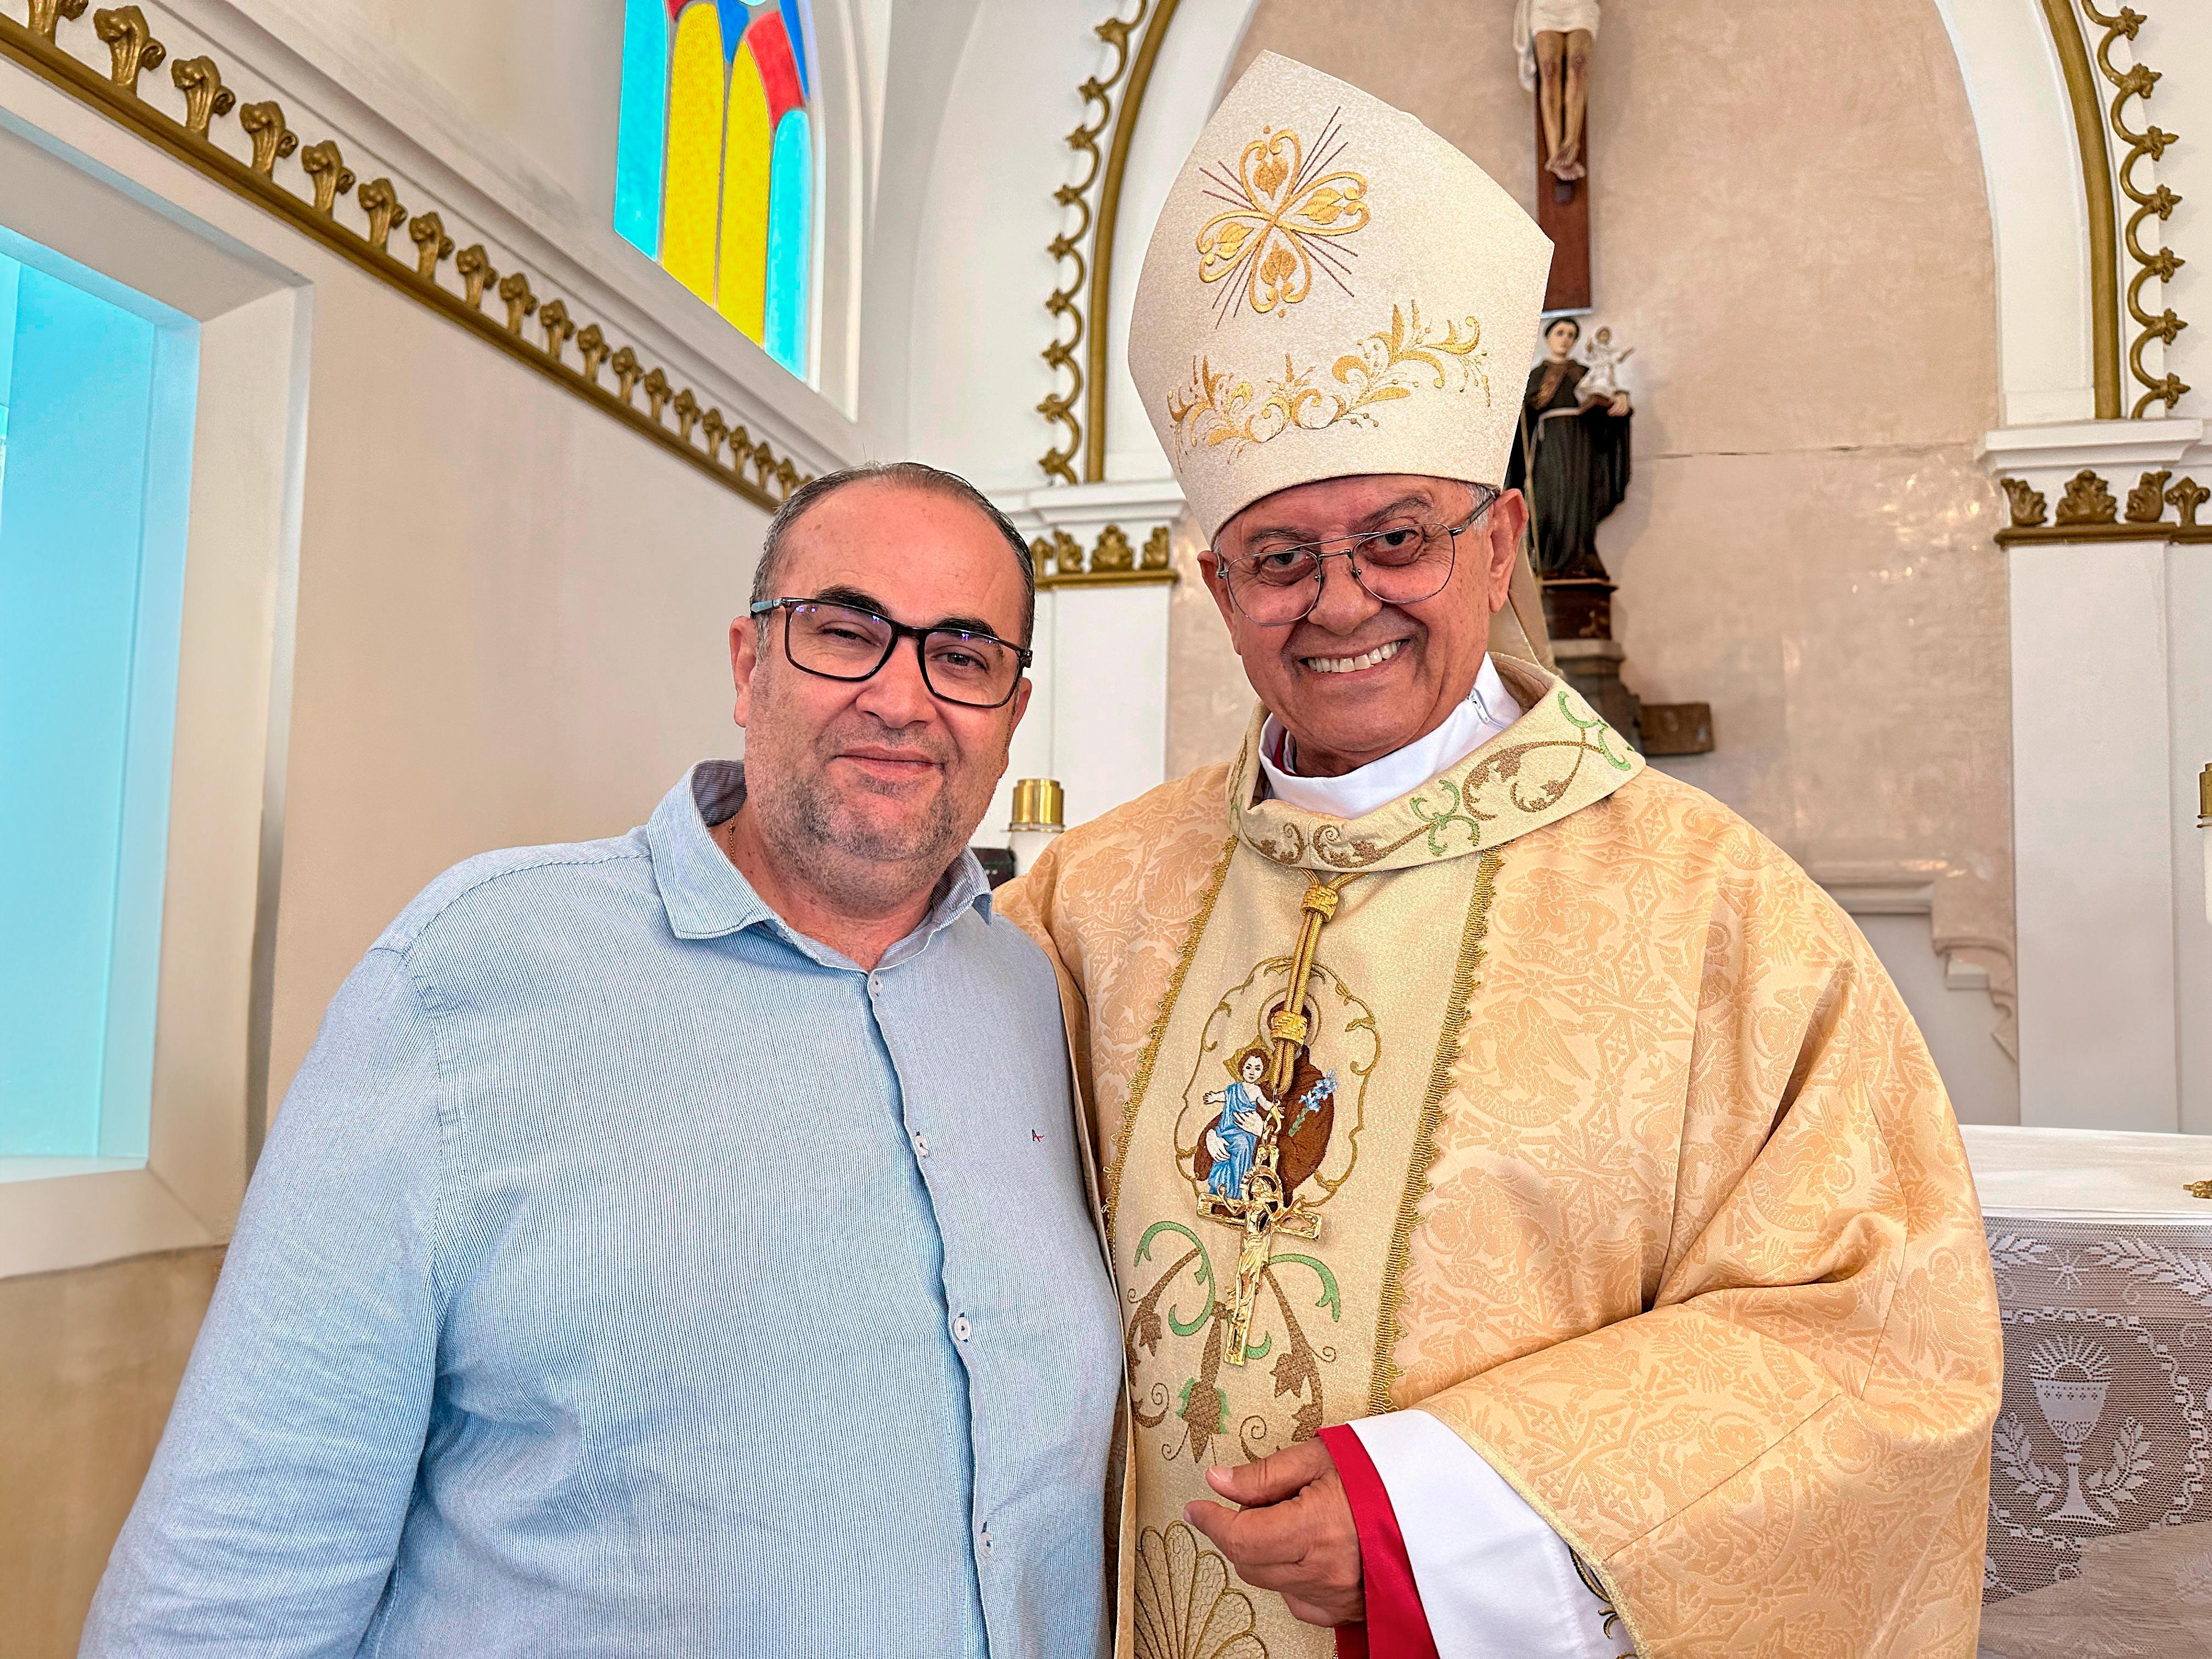 Bispo de Jequié receberá Comenda 2 de Julho em sessão especial da Alba